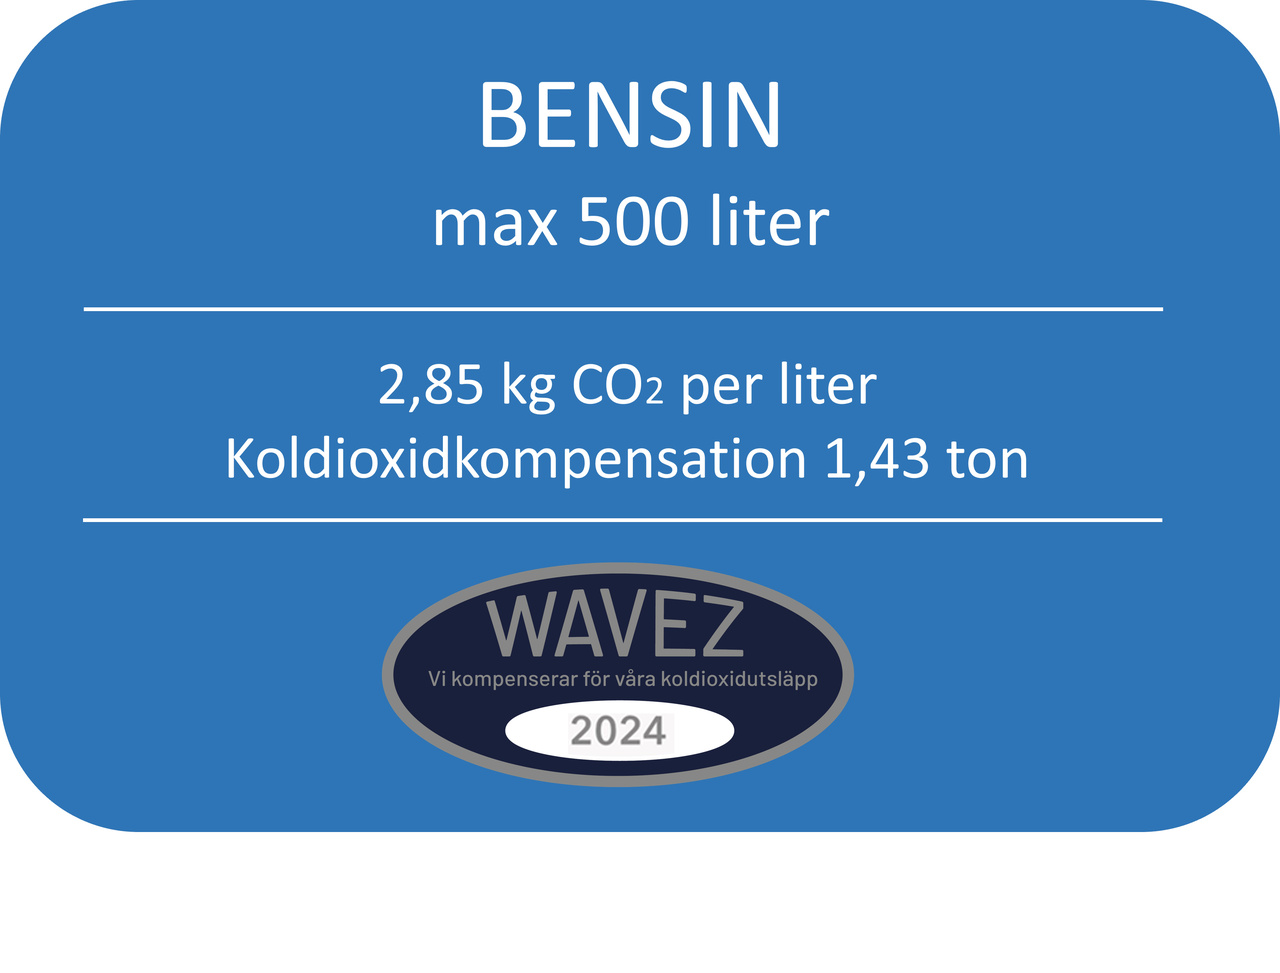 KOLDIOXIDKOMP FÖR 500L BENSIN -1,43 TON CO2 WAVEZ